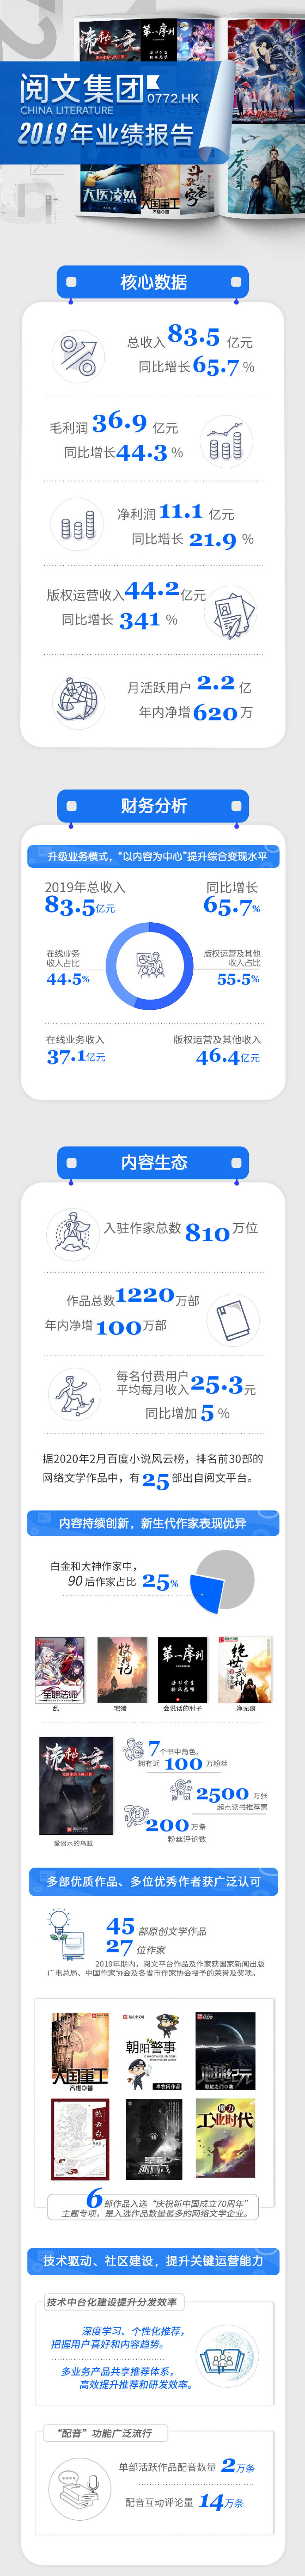 《庆余年》等网文改编剧火爆 阅文2019年总收入83.5亿